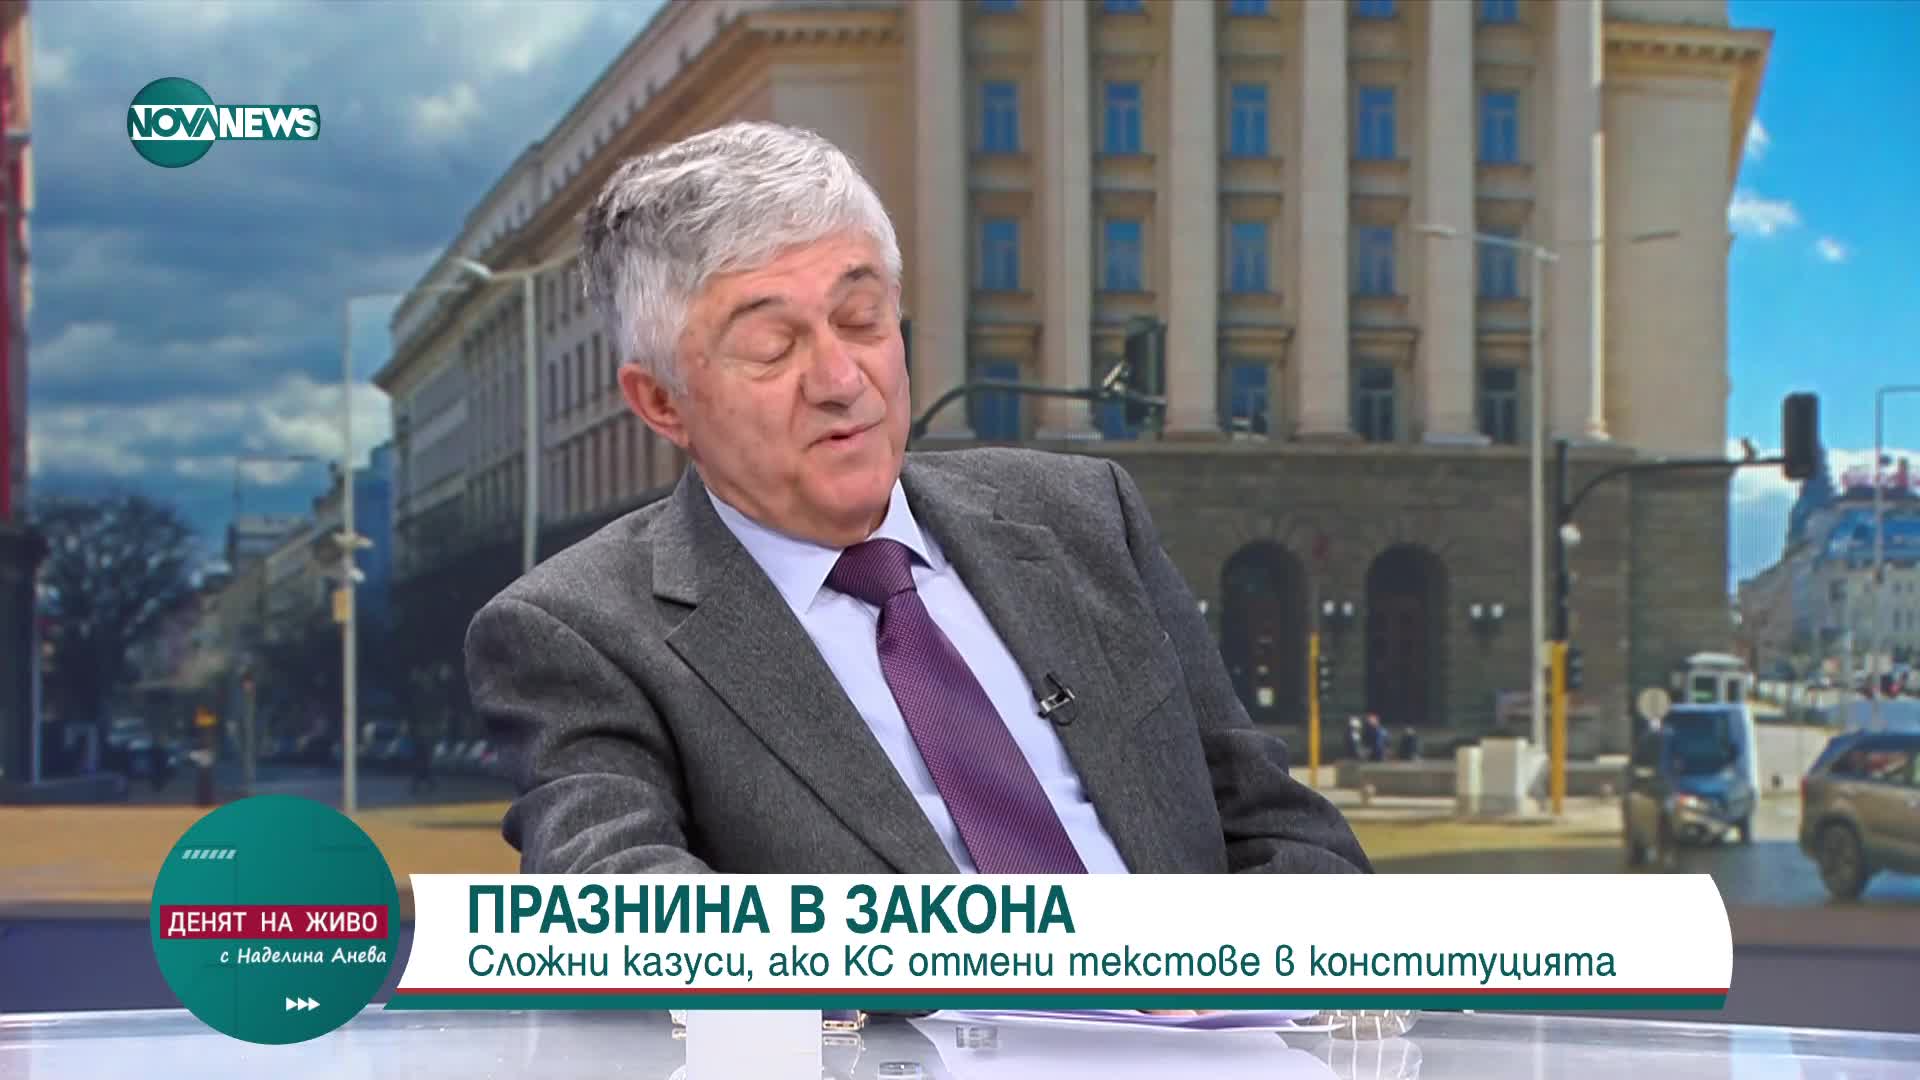 Ненков: Конфликт на интереси е шефът на Сметната палата да е служебен премиер